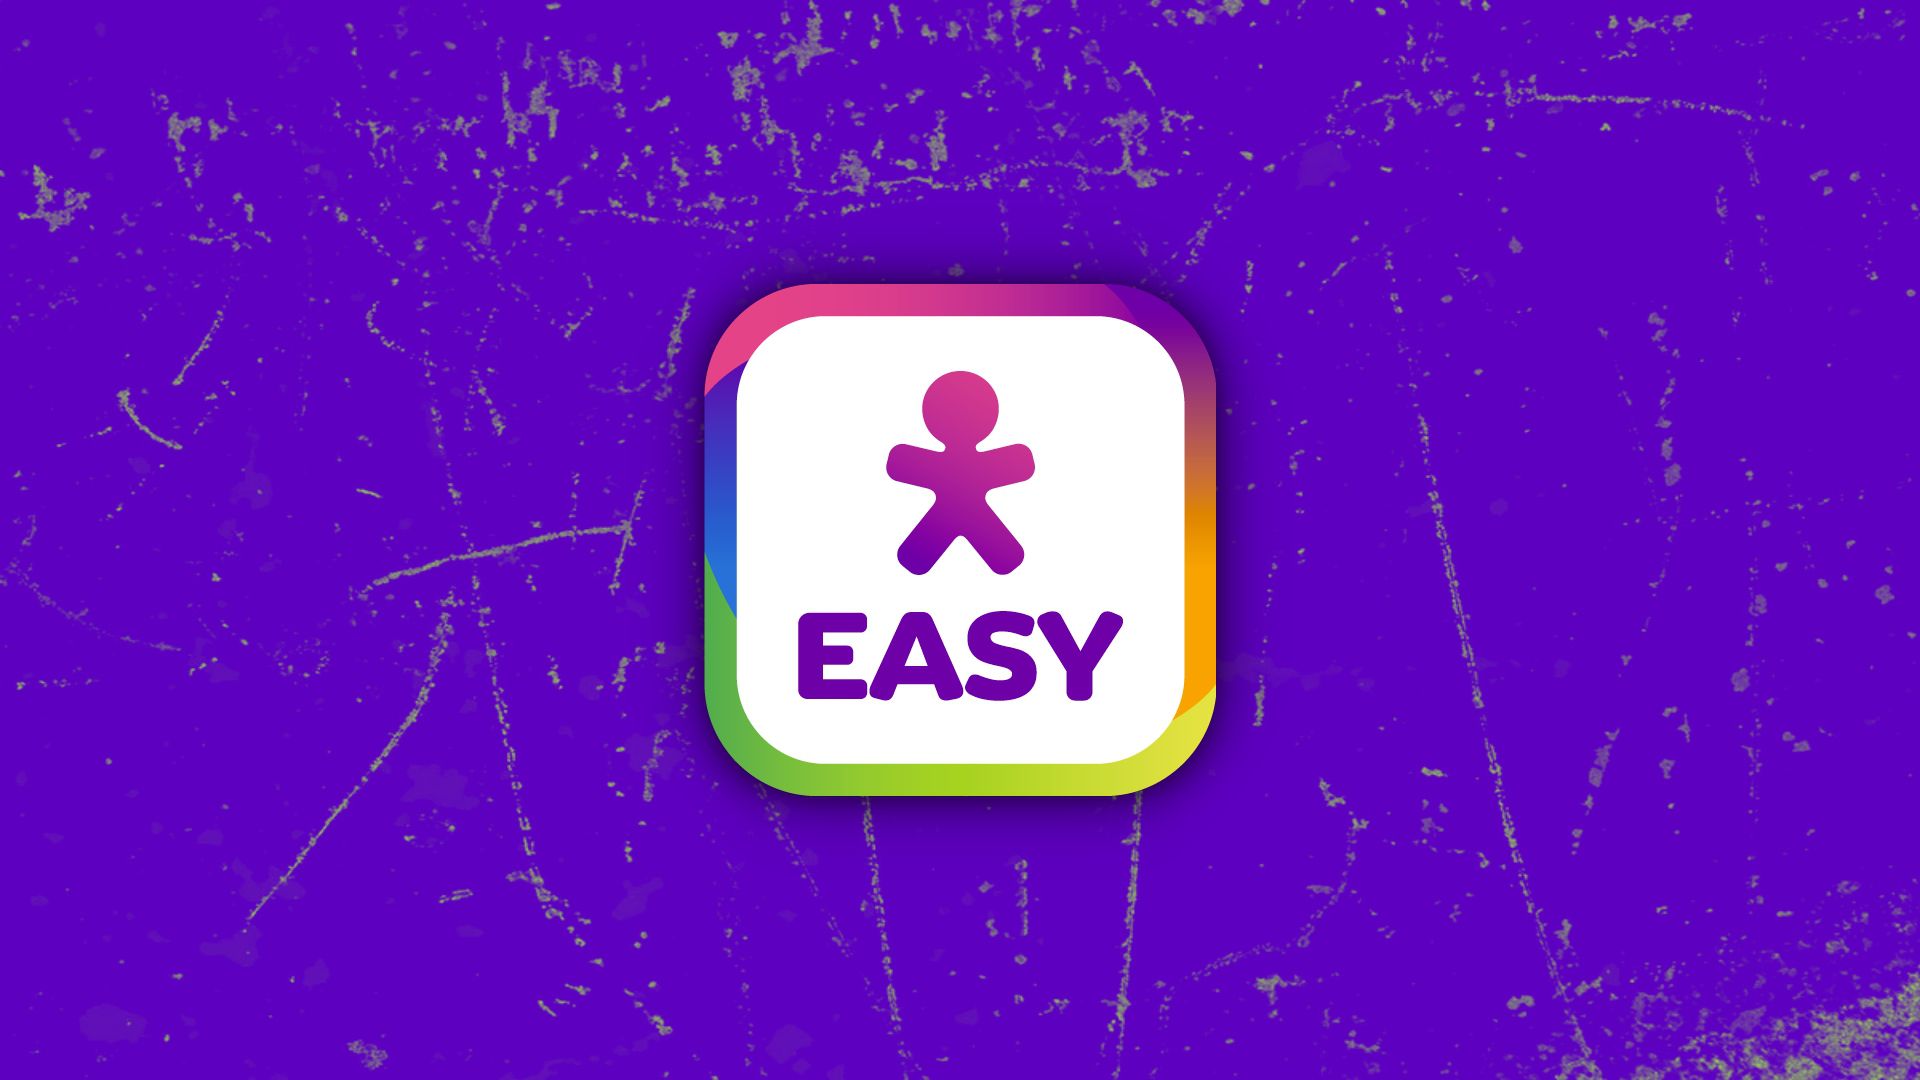 Para que servem as diárias de aplicativo do vivo easy? #vivoeasy #vivo